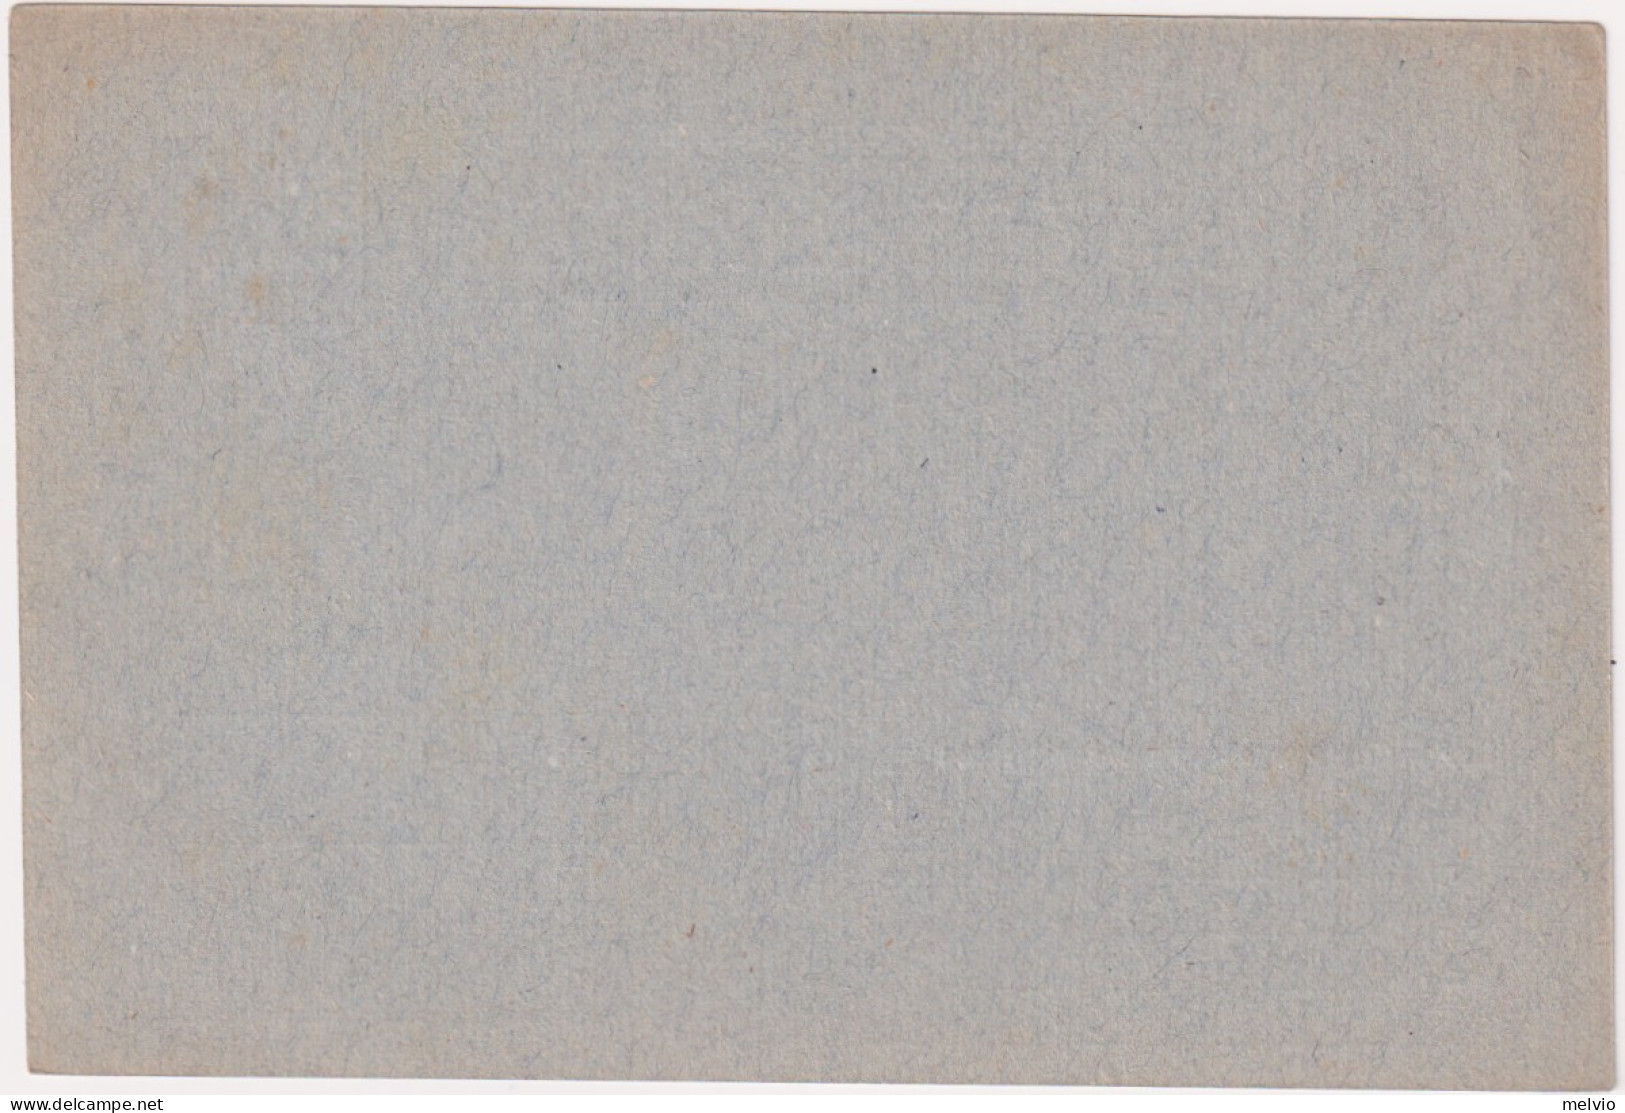 1945-Provvisoria Cartolina Postale Per Le Forze Armate Cartiglio Grande Centrato - Entiers Postaux